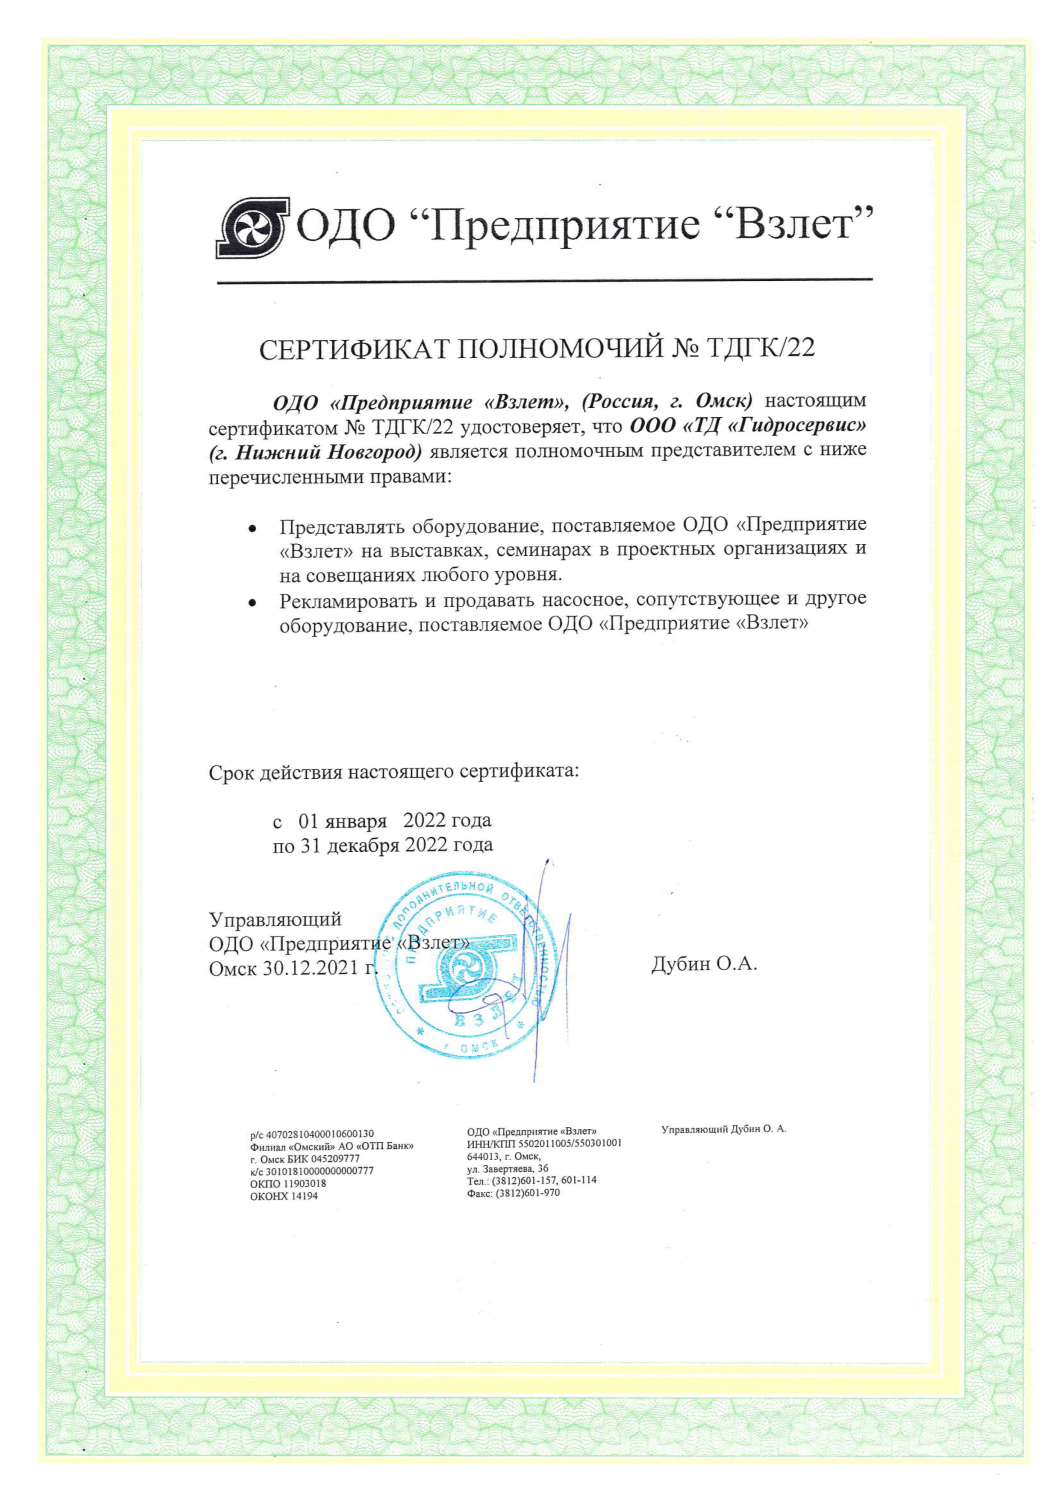 Сертификат полномочий Предприятия "ВЗЛЁТ"